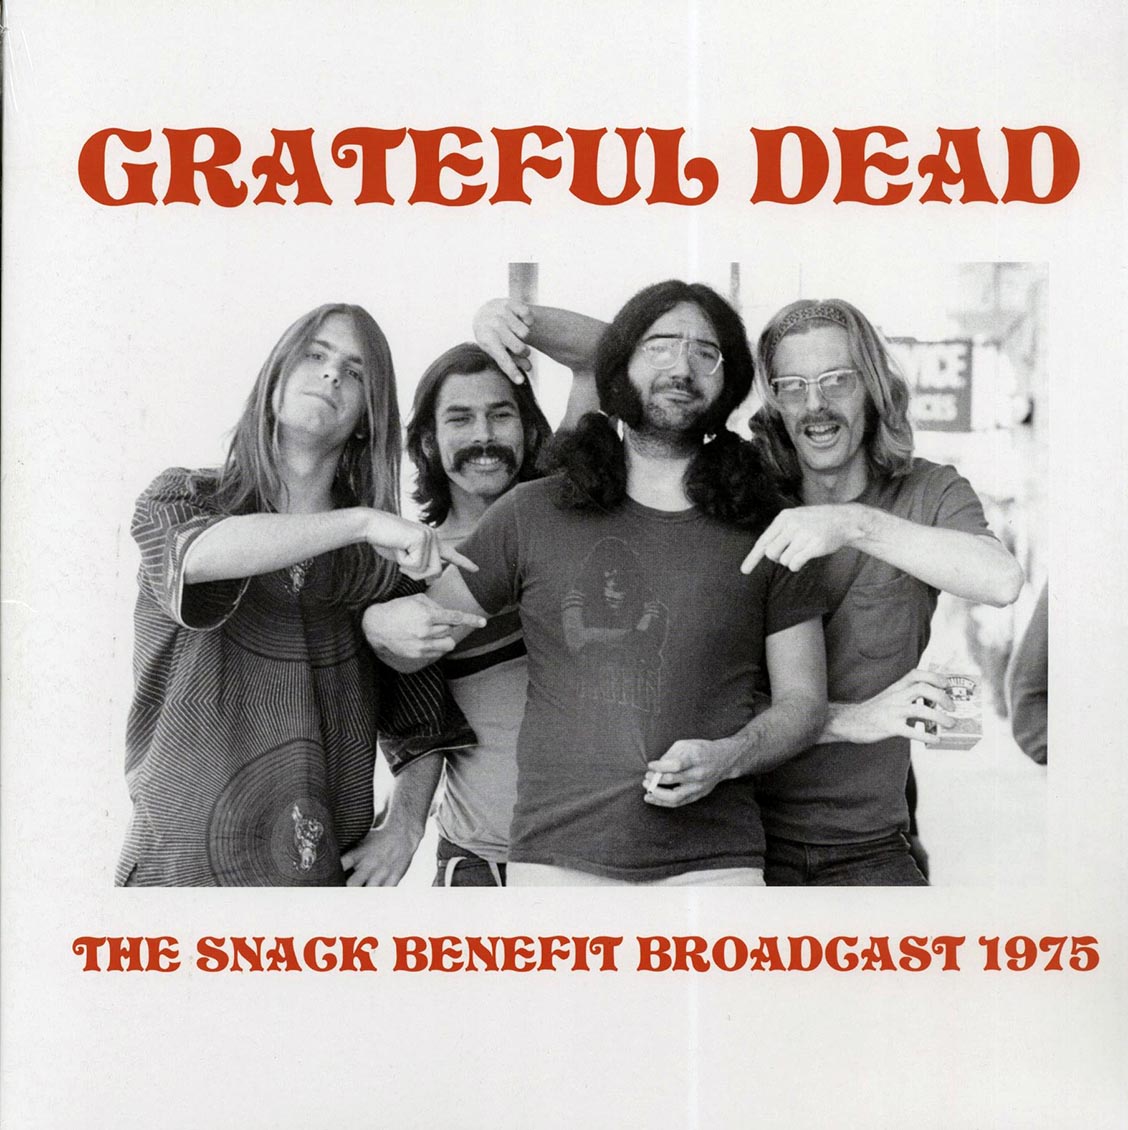 Grateful Dead - The Snack Benefit Broadcast 1975 (ltd. 500 copies made) - Vinyl LP